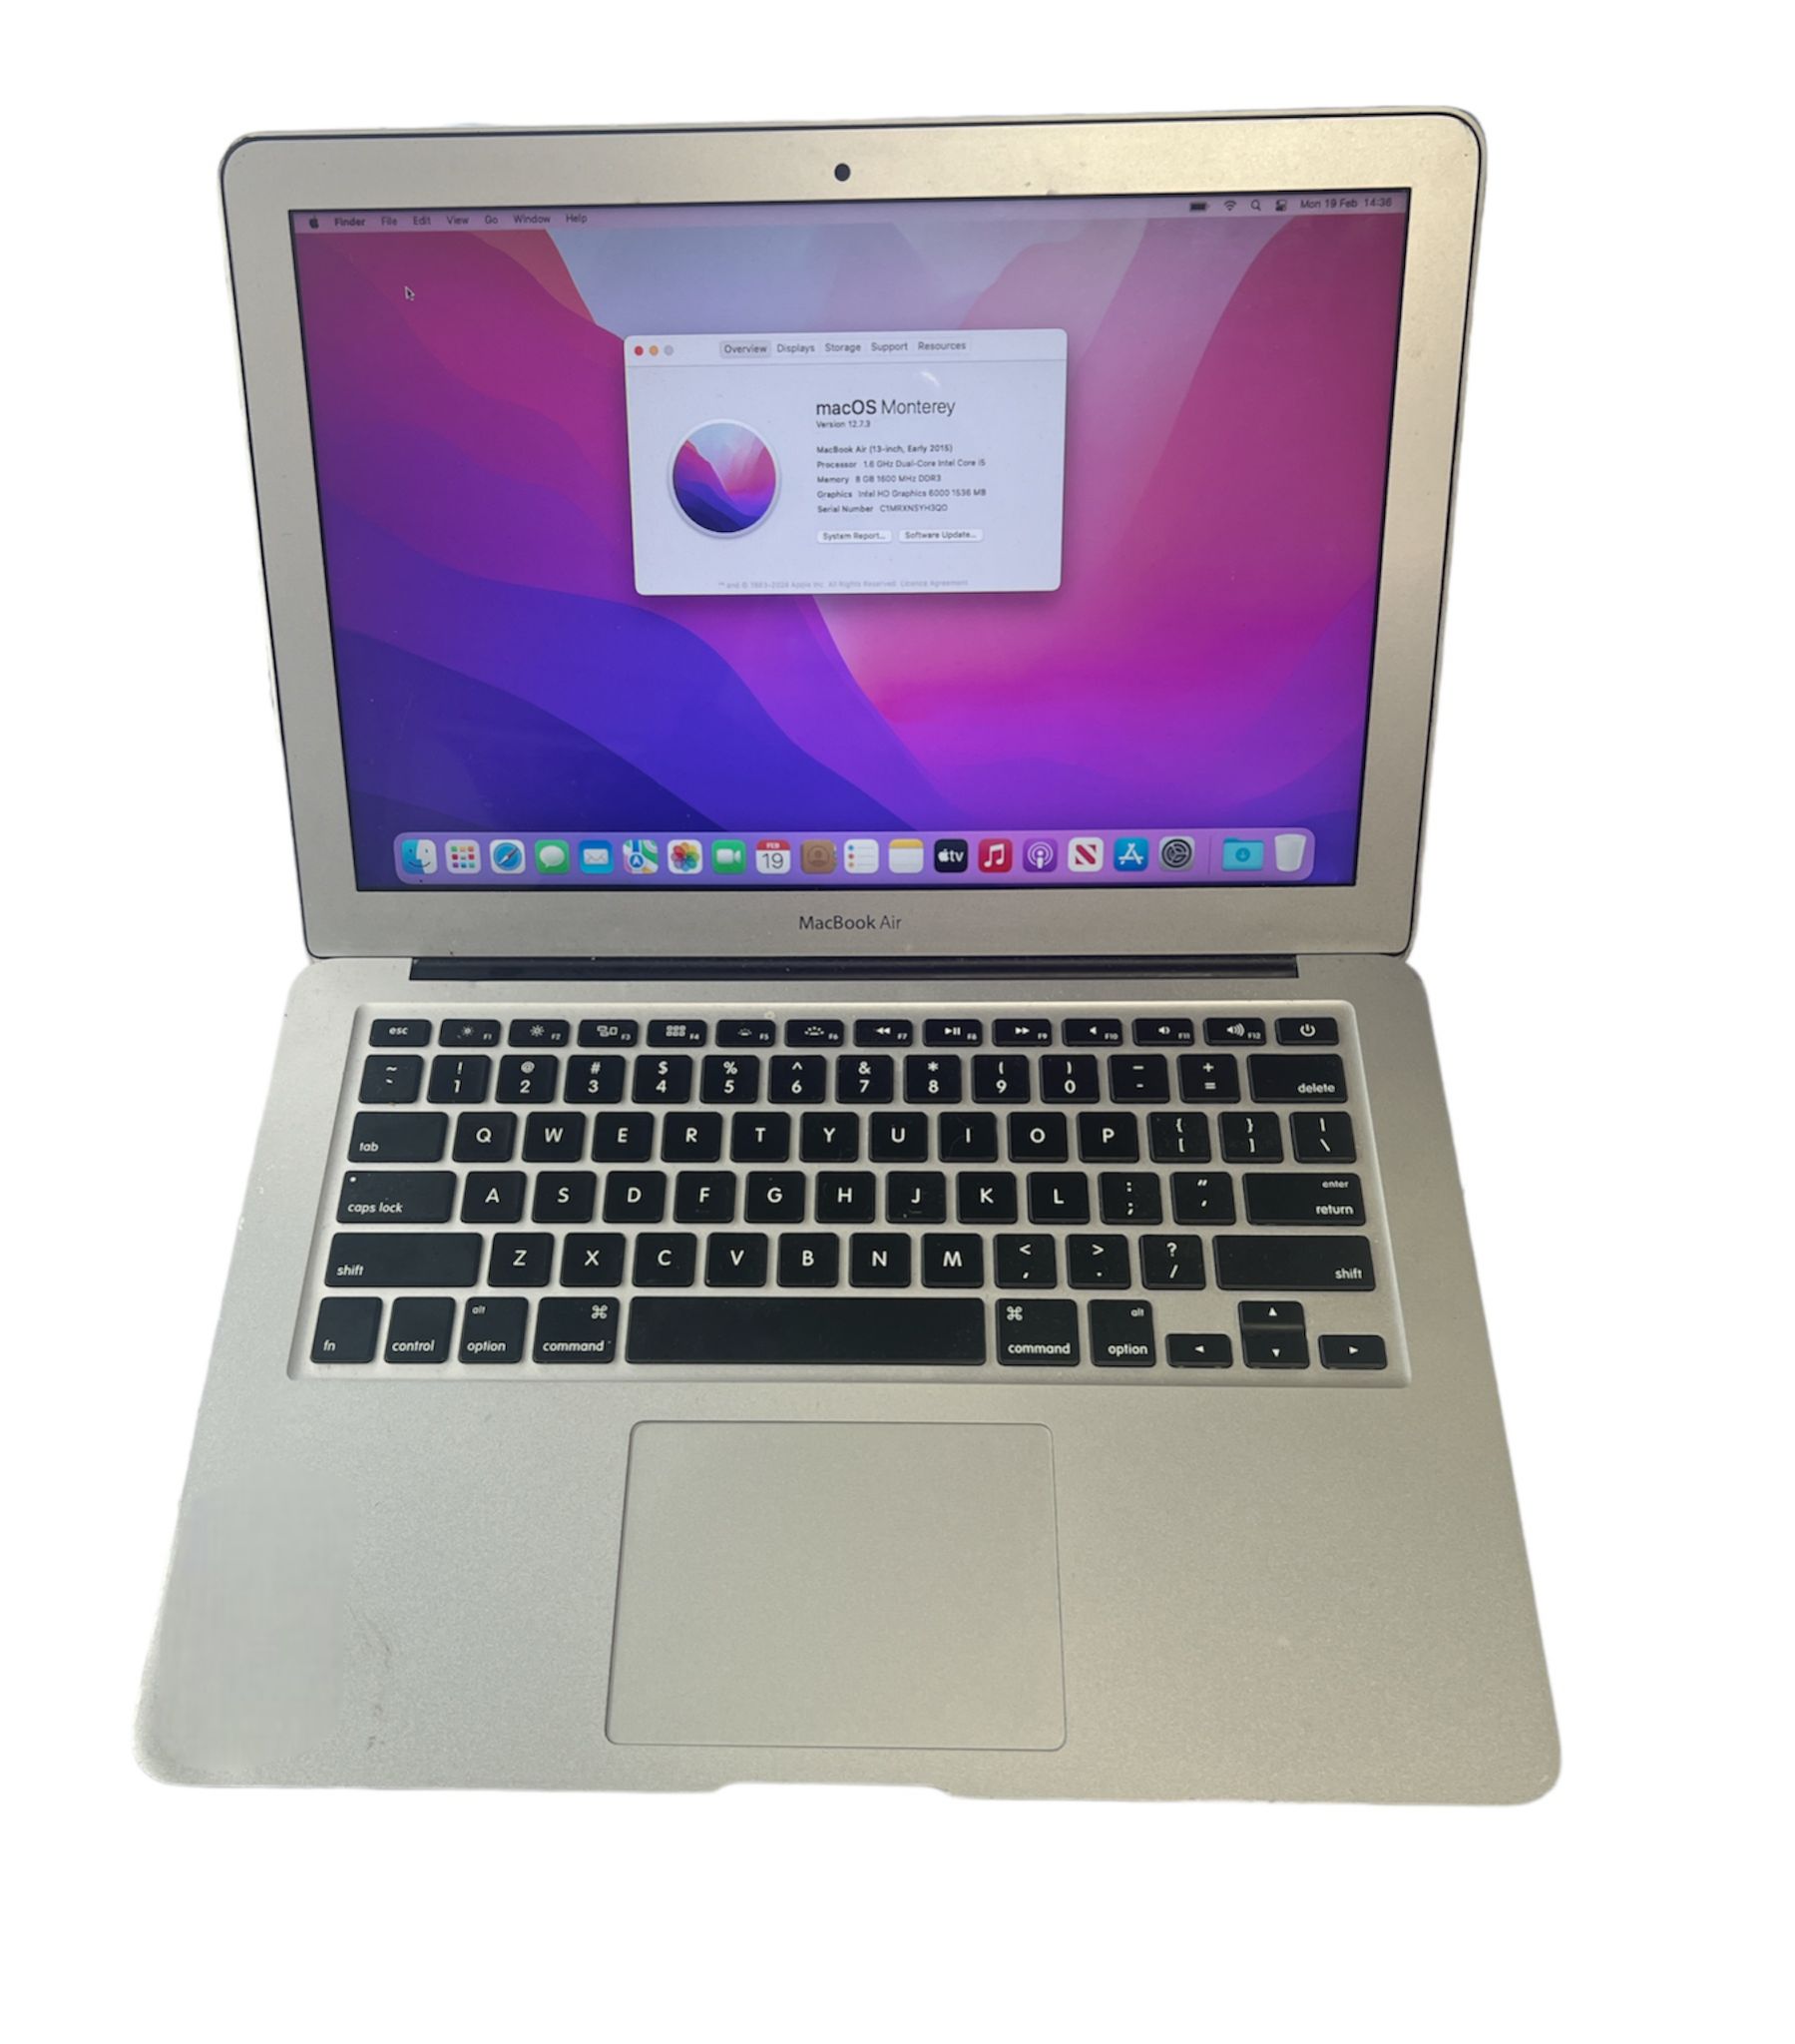 Macbook Air 13-inch 8gb 1.6ghz core i5